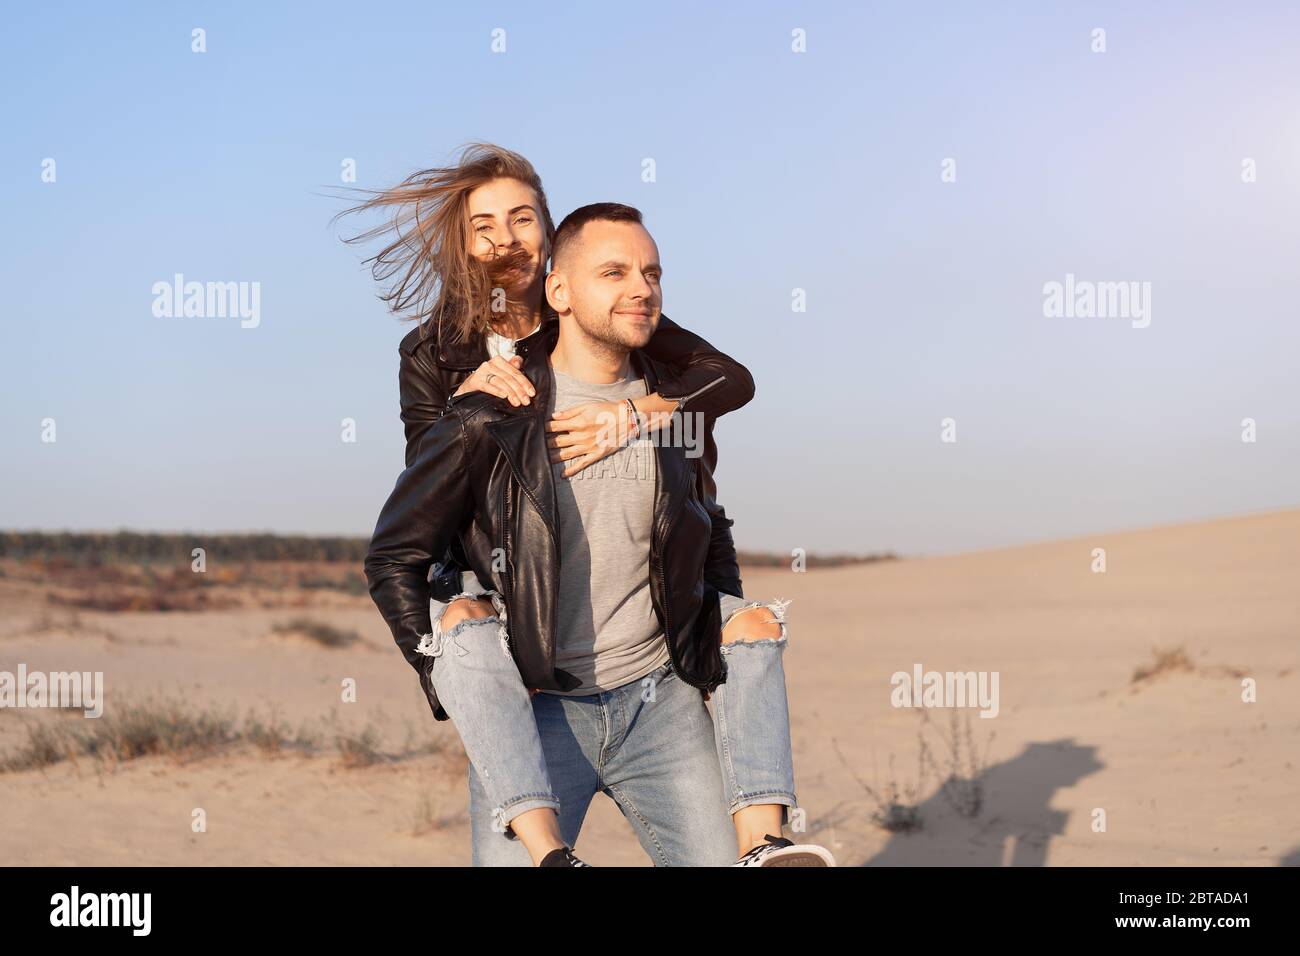 Joyeux et mignon adorable adulte couple veste en cuir et jeans homme avec femme petite amie sur le dos piggy, jouer, rire, sourire et sauter sur le coucher du soleil A. Banque D'Images